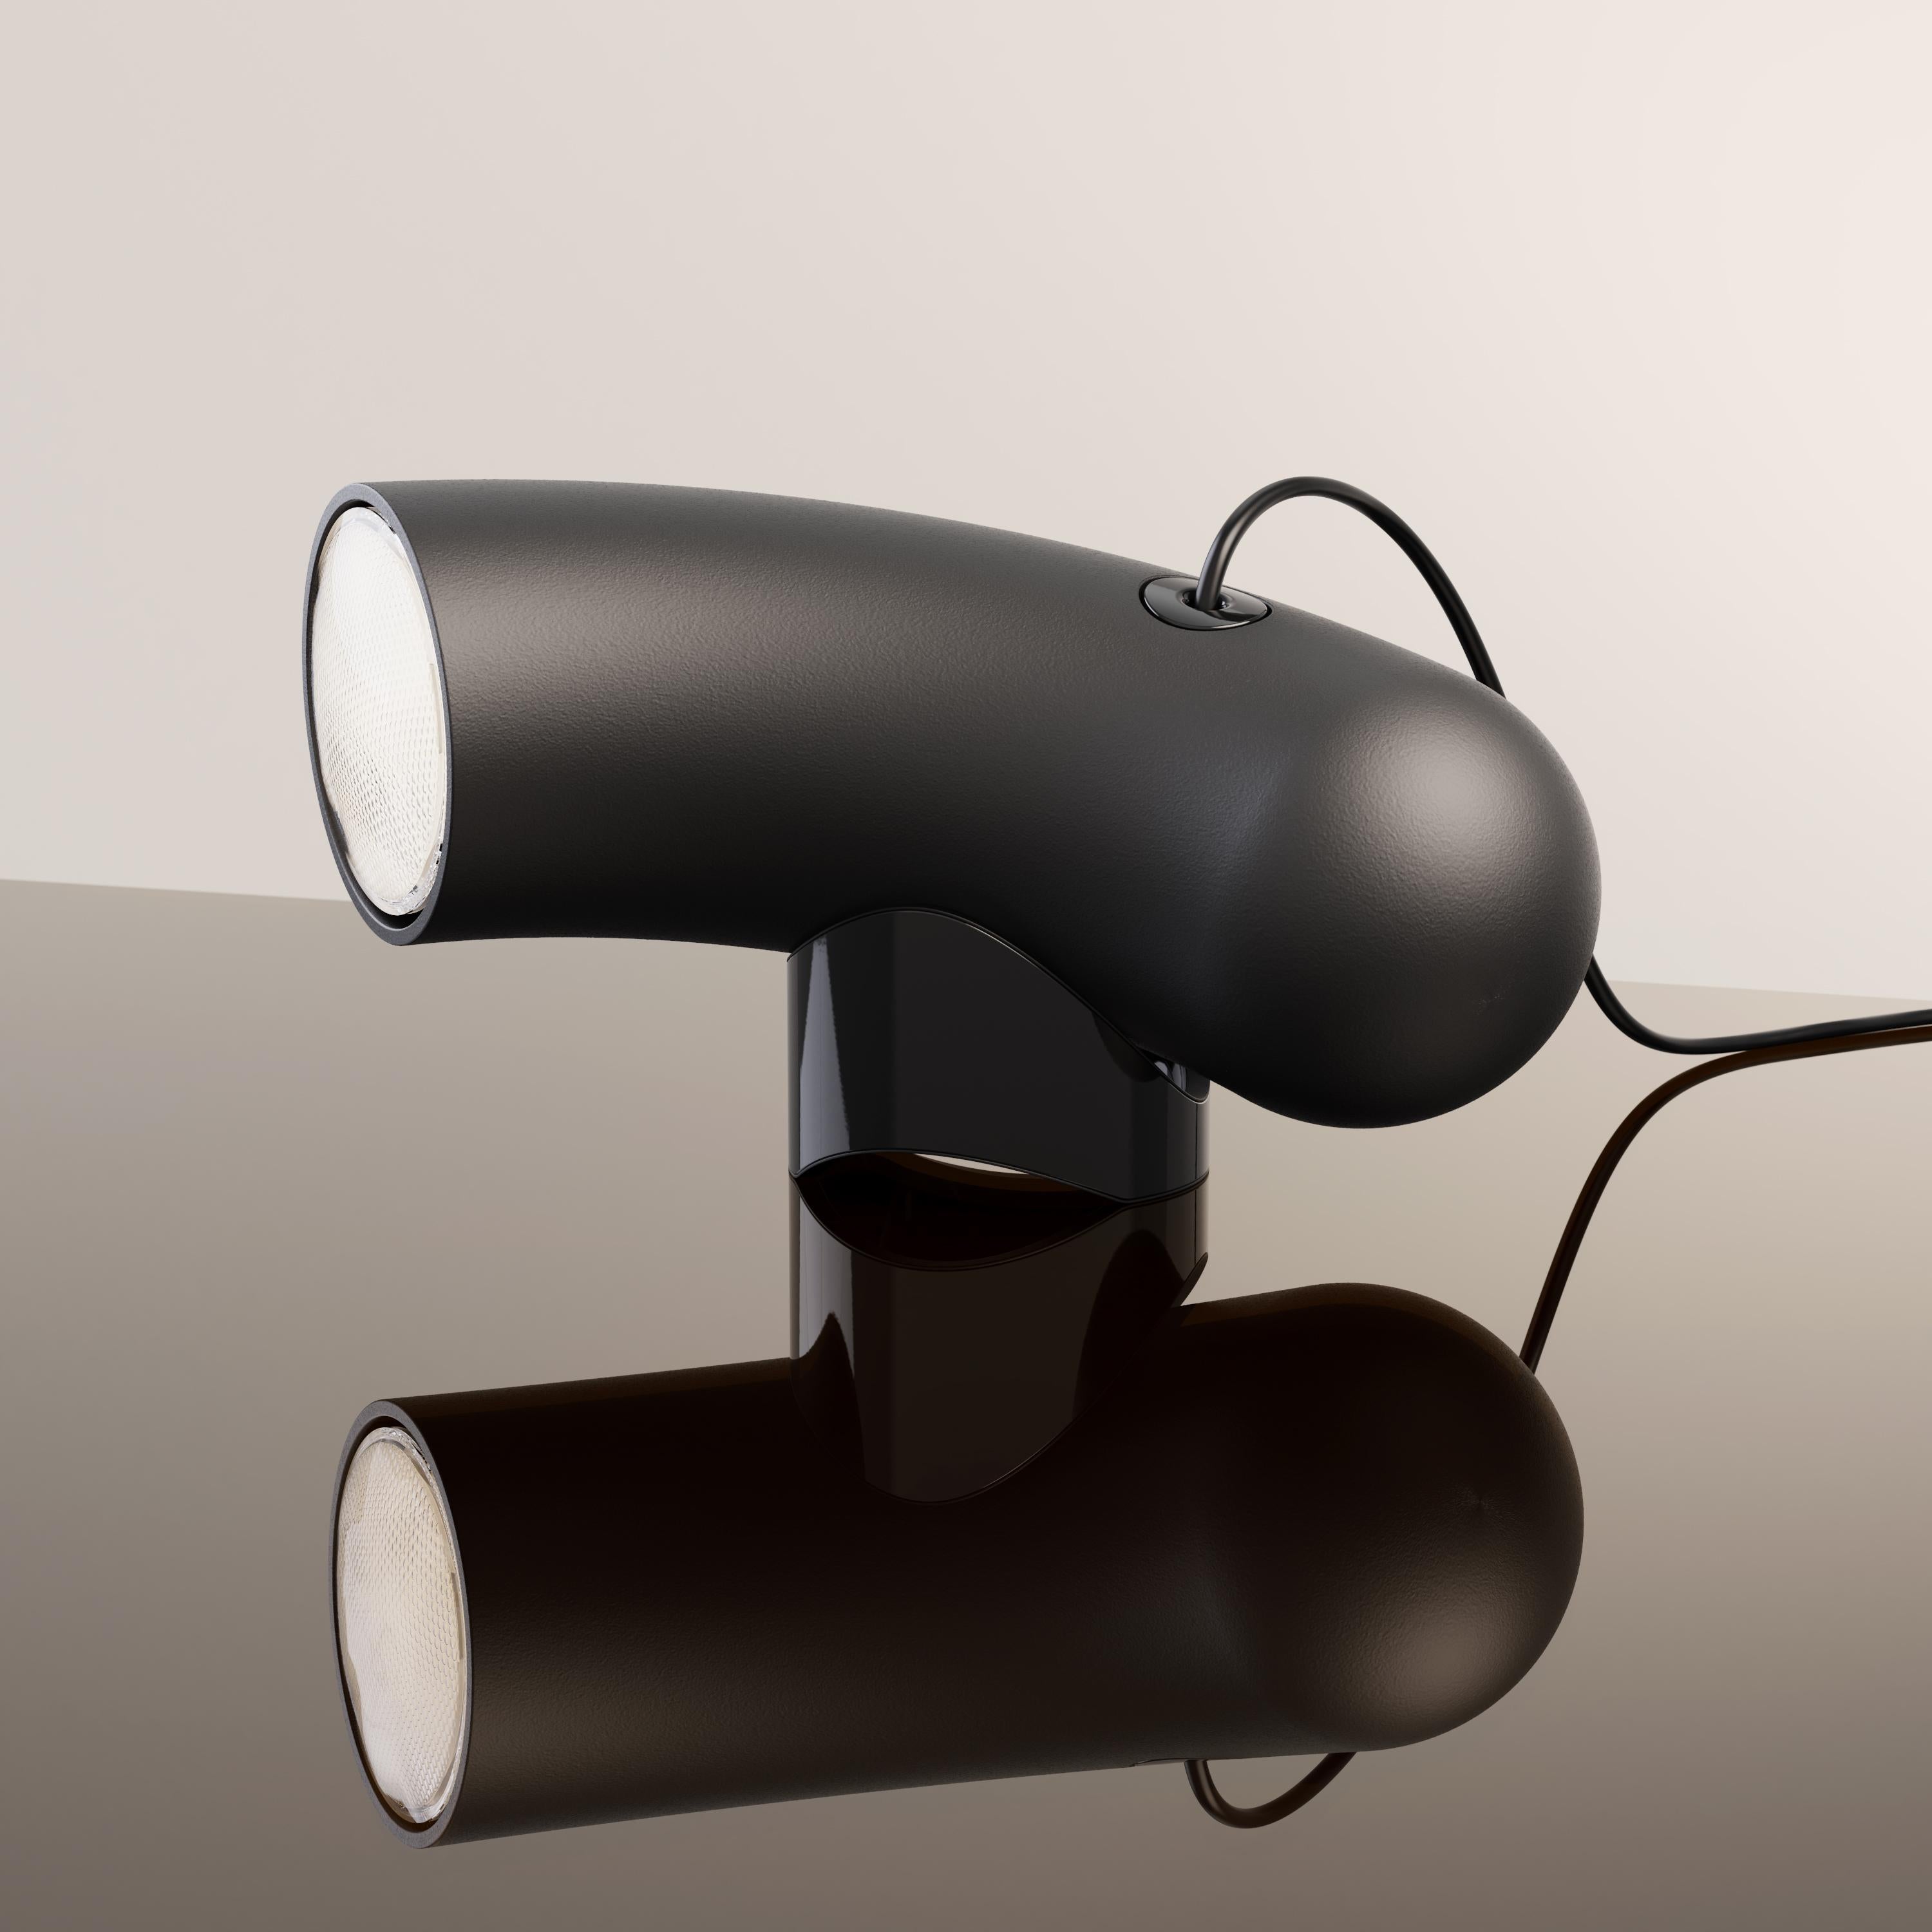 Sandy black Hyphen Simple lampe de table par Studio d'Armes
Dimensions : P 11 x L 32 x H 15 cm
Matériaux : Acier moulé noir sablé.
Disponible en acier noir sableux, acier noir chromatique, porcelaine naturelle et acier personnalisé.

Dérivé du grec